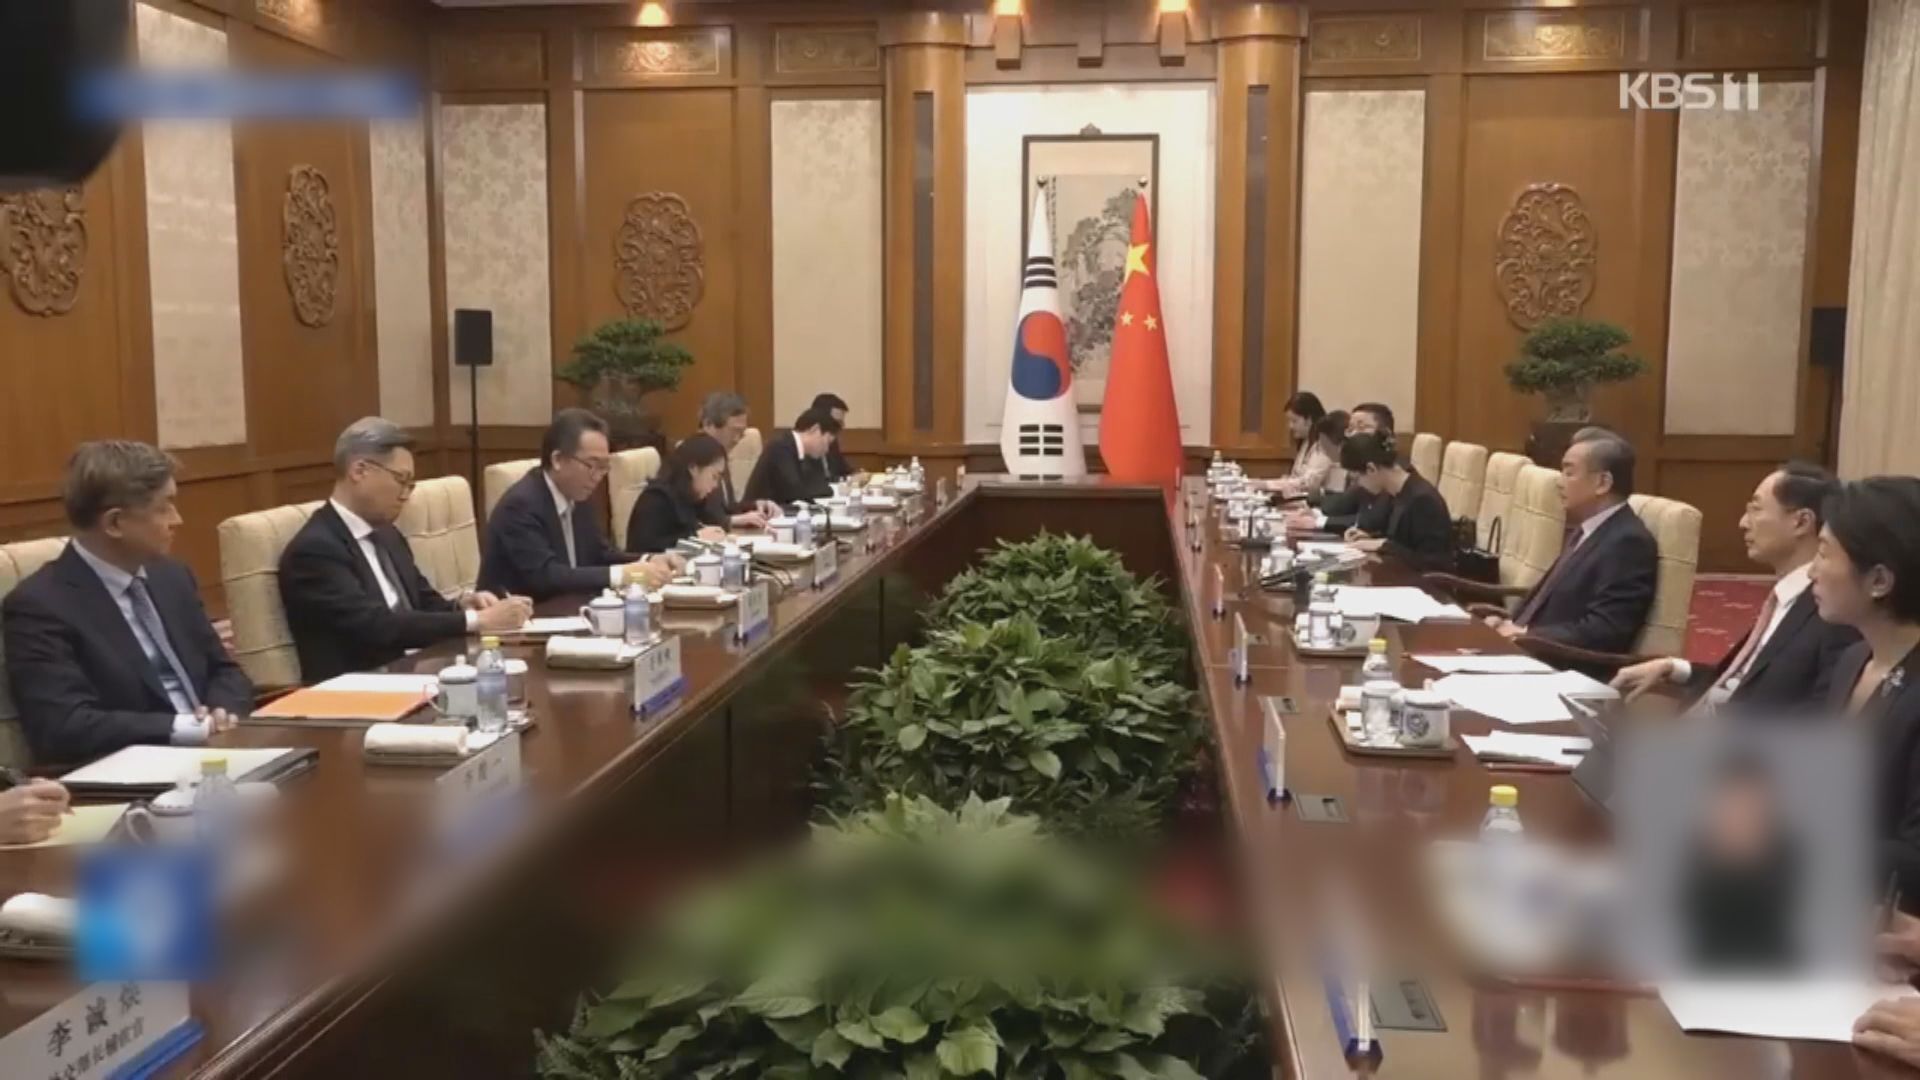 王毅晤南韓外長趙兌烈 稱應排除干擾推動兩國關係發展